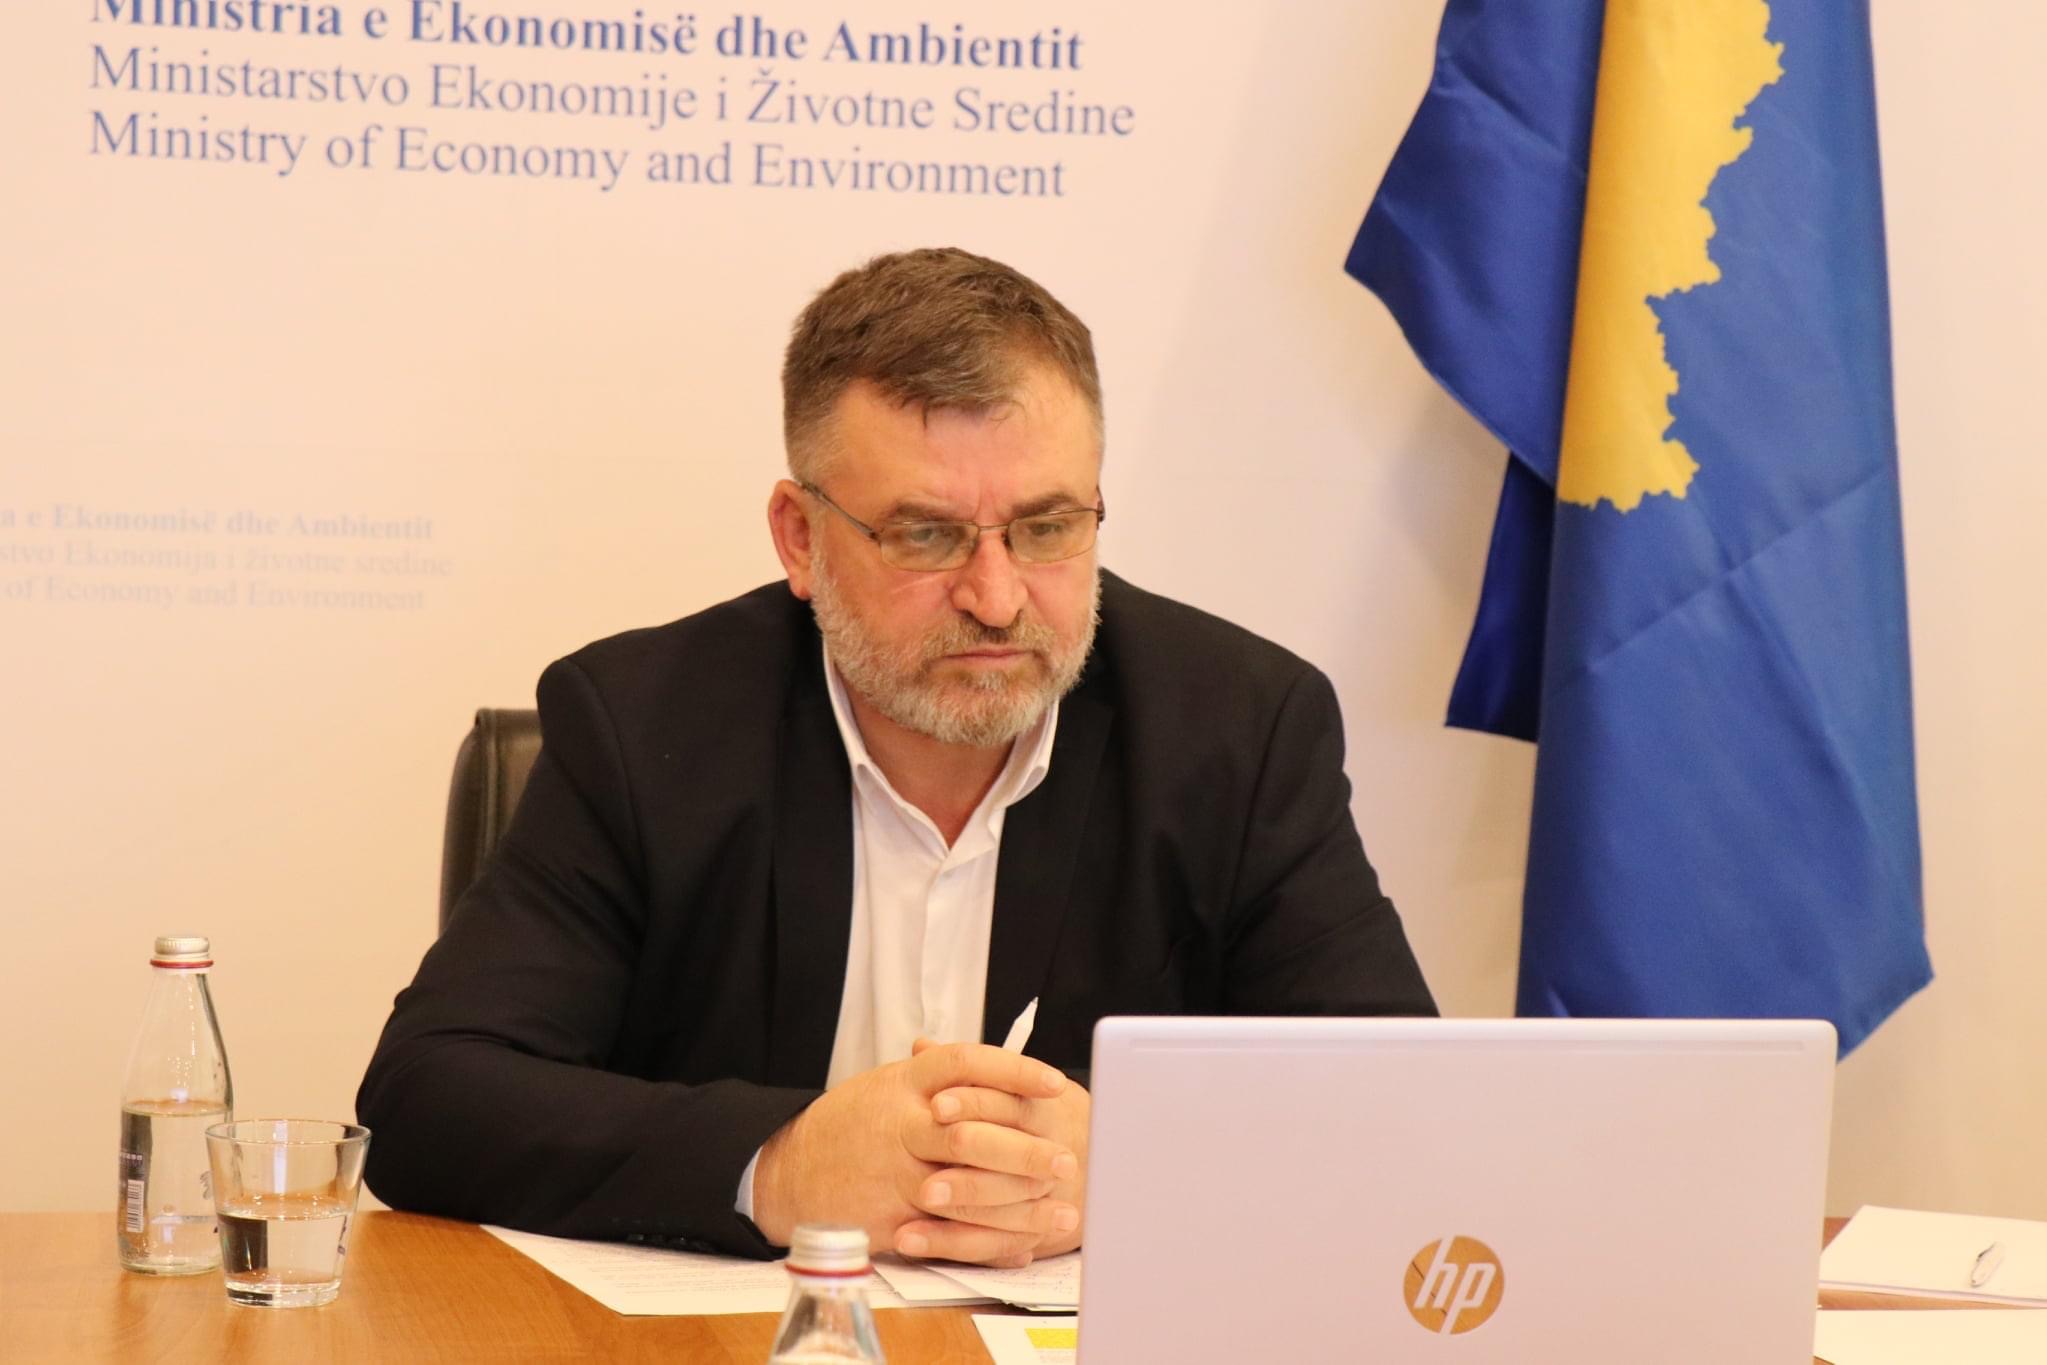 Ministri Kuçi i përgjigjet deputetit Zyba dhe deputetës Ismaili